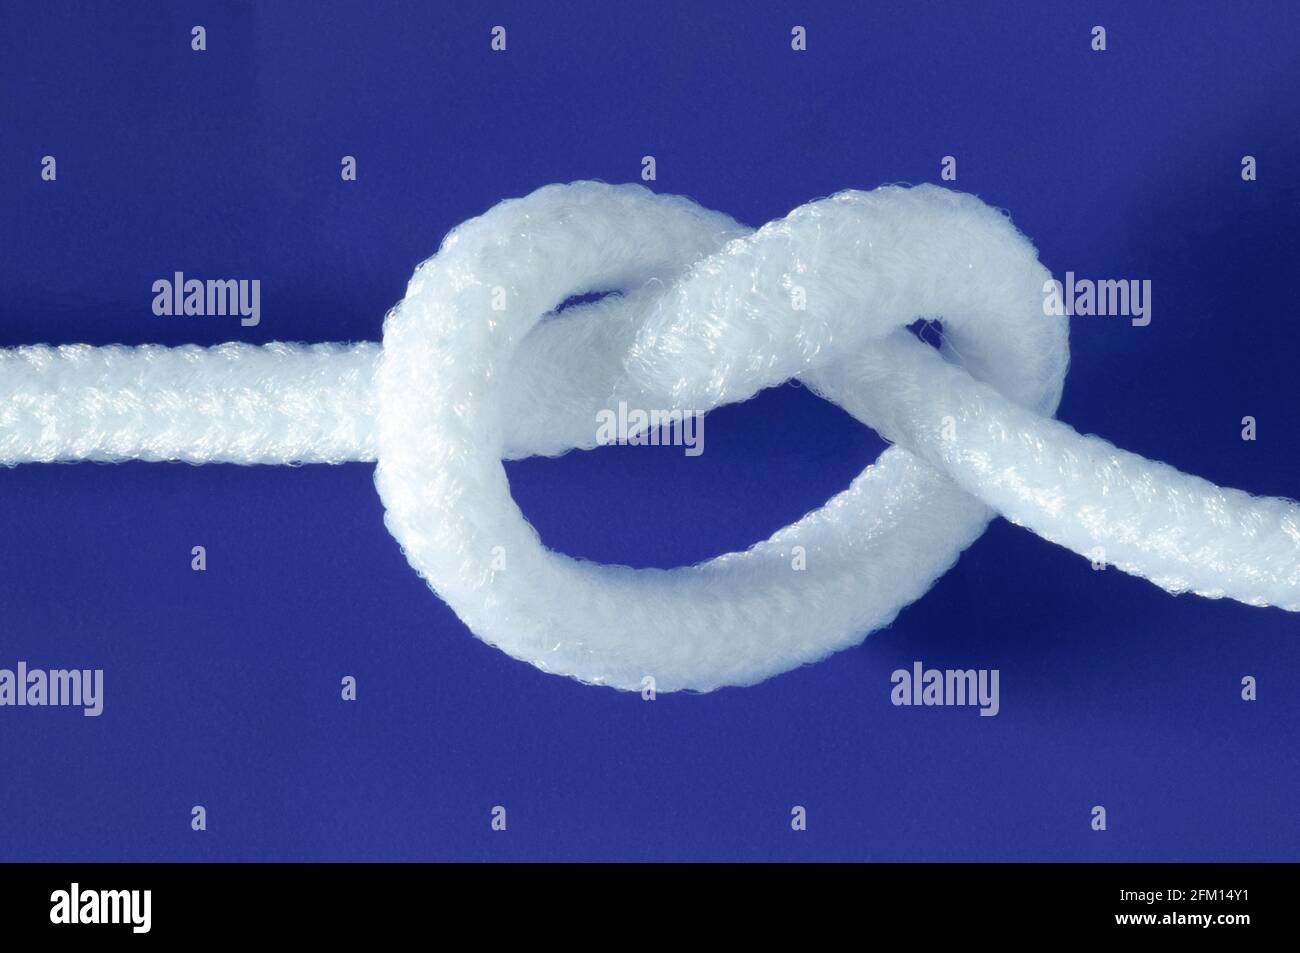 Nœud de corde blanc sur fond bleu clair Banque D'Images